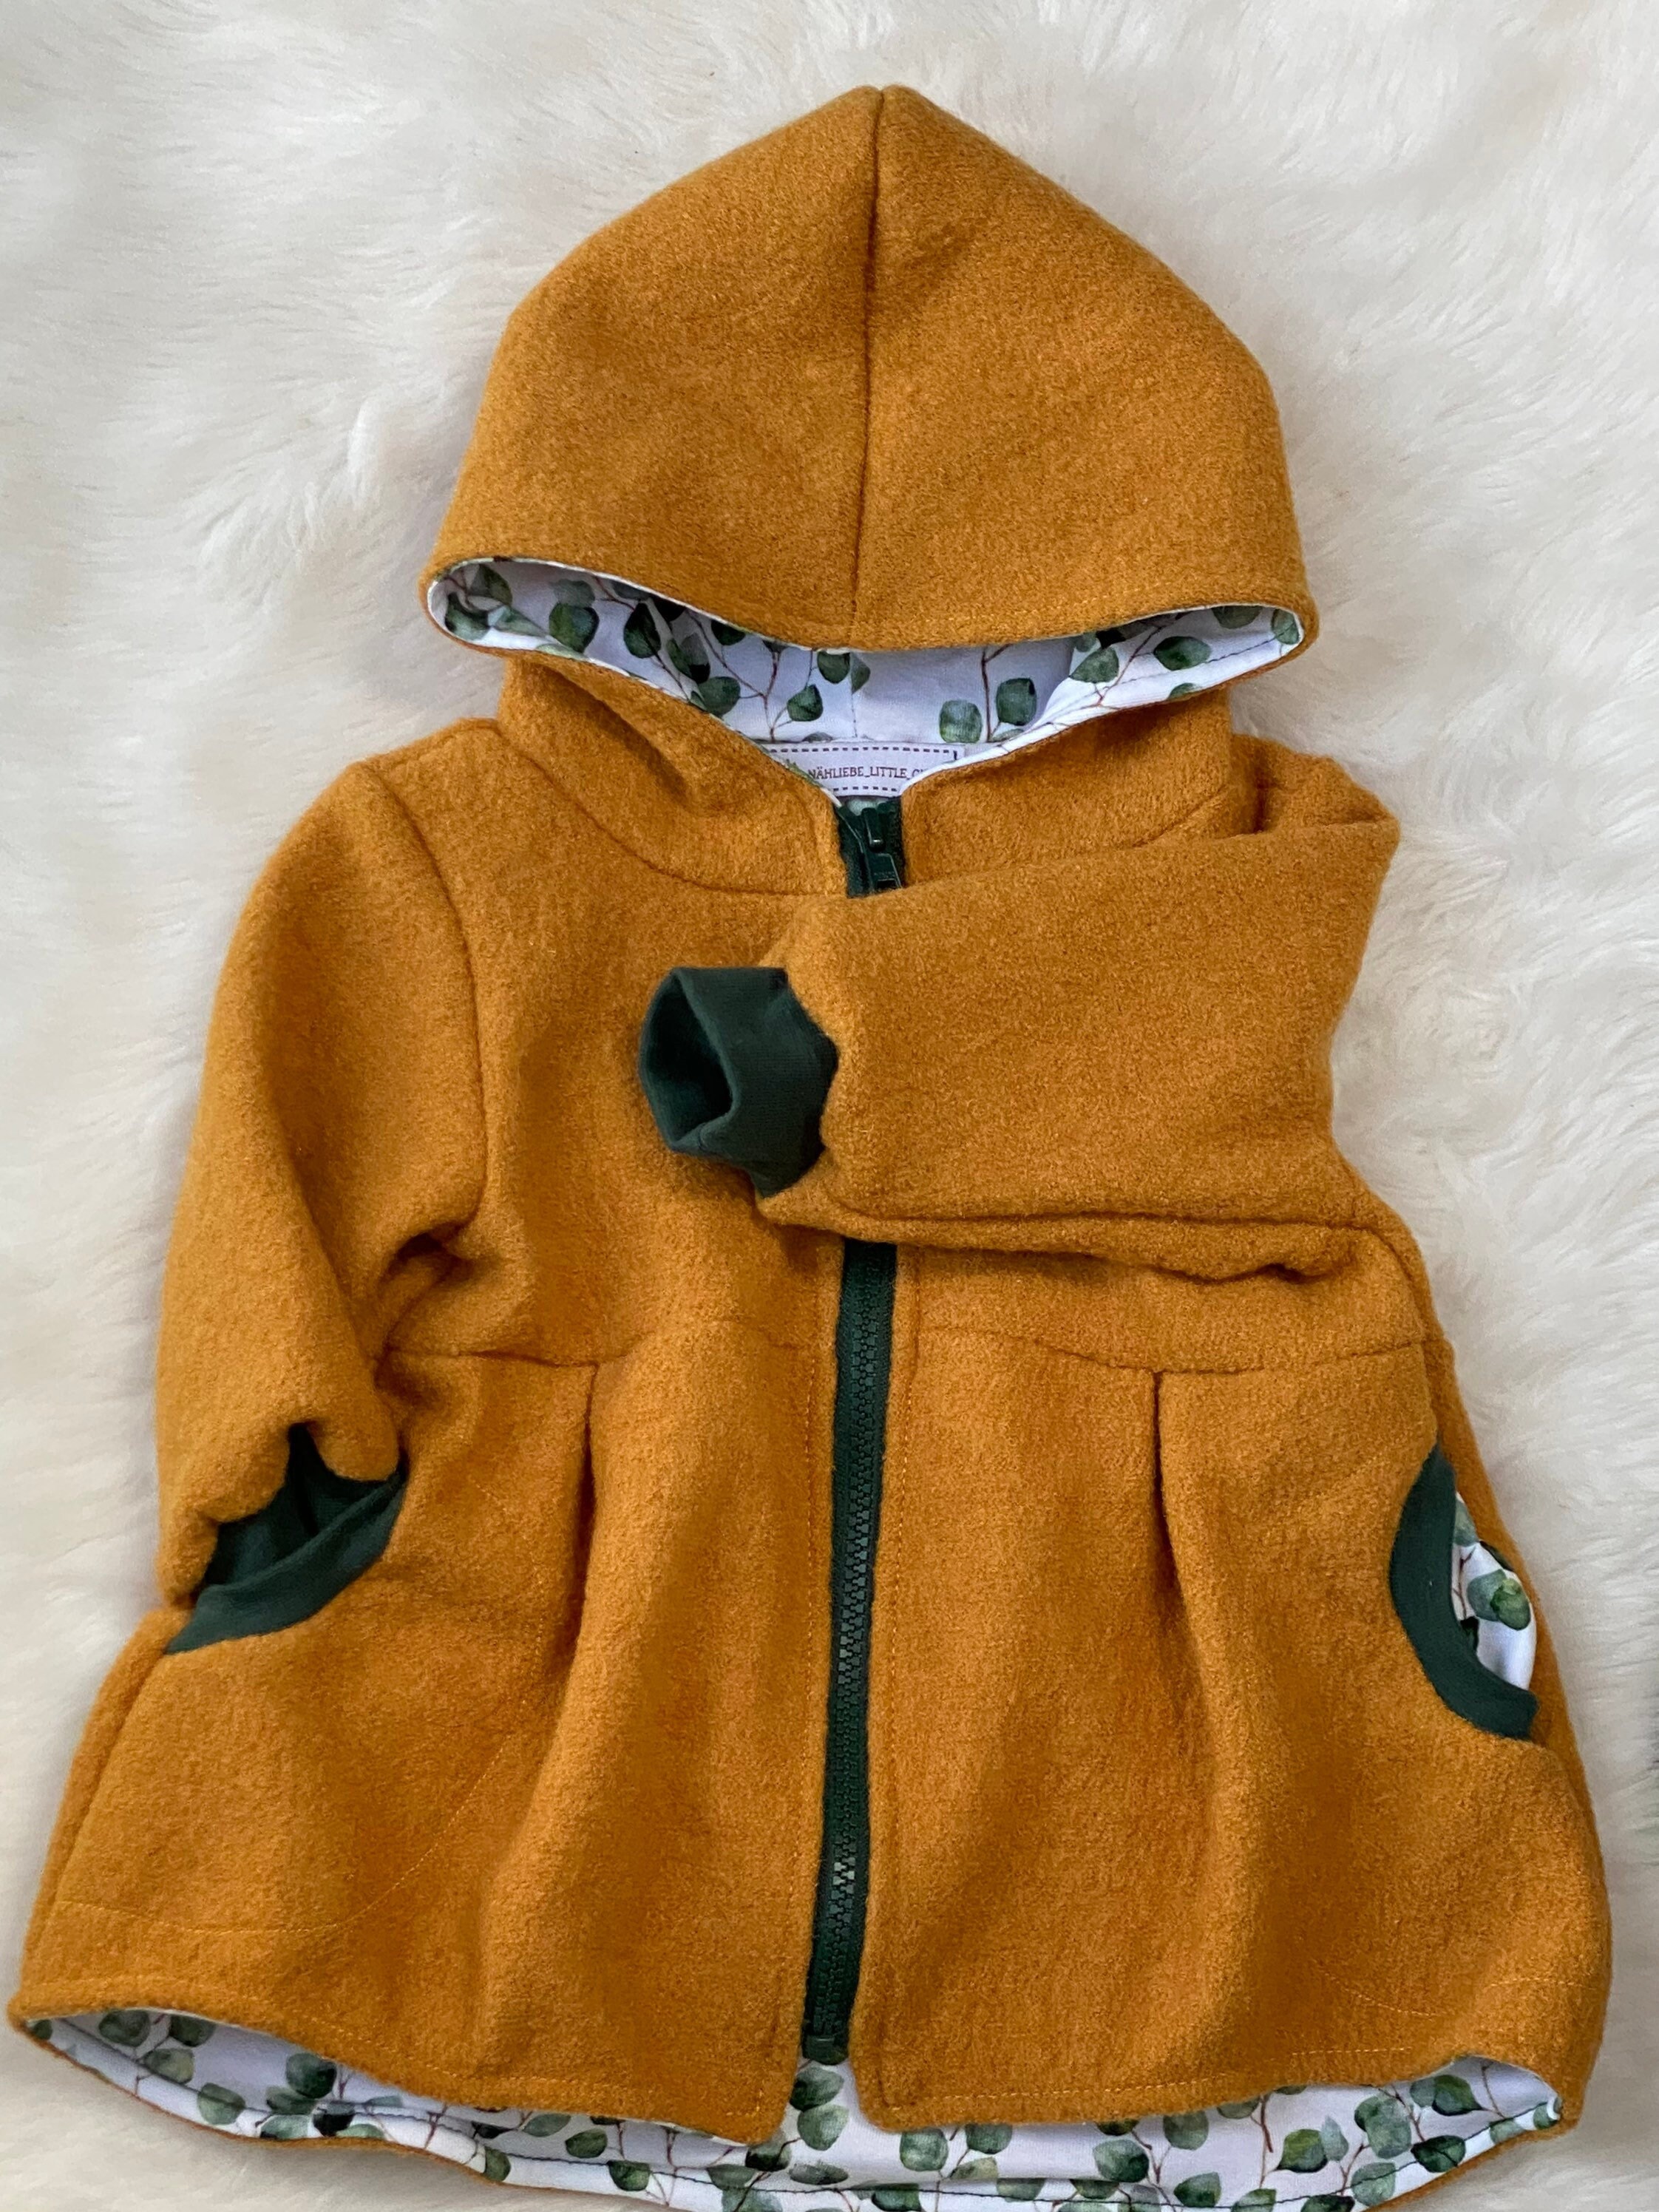 Wool Walk Jacket Baby Child Ladybug Jacket Walk Jacket Clothing Unisex Kids Clothing Jackets & Coats 